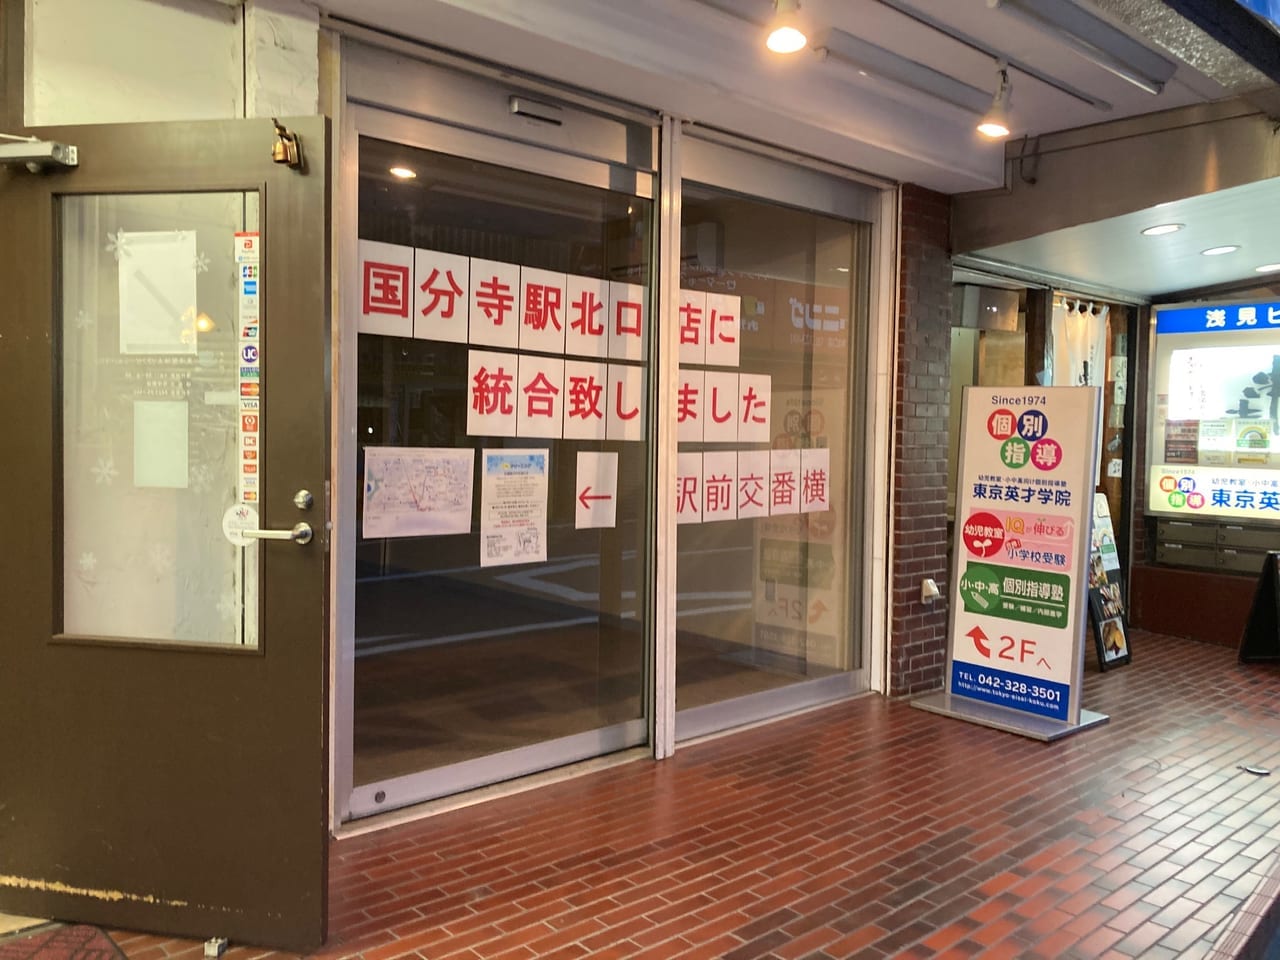 『ポニークリーニング国分寺本町３丁目店』が5月31日で閉店、国分寺駅北口店と統合されたようです。